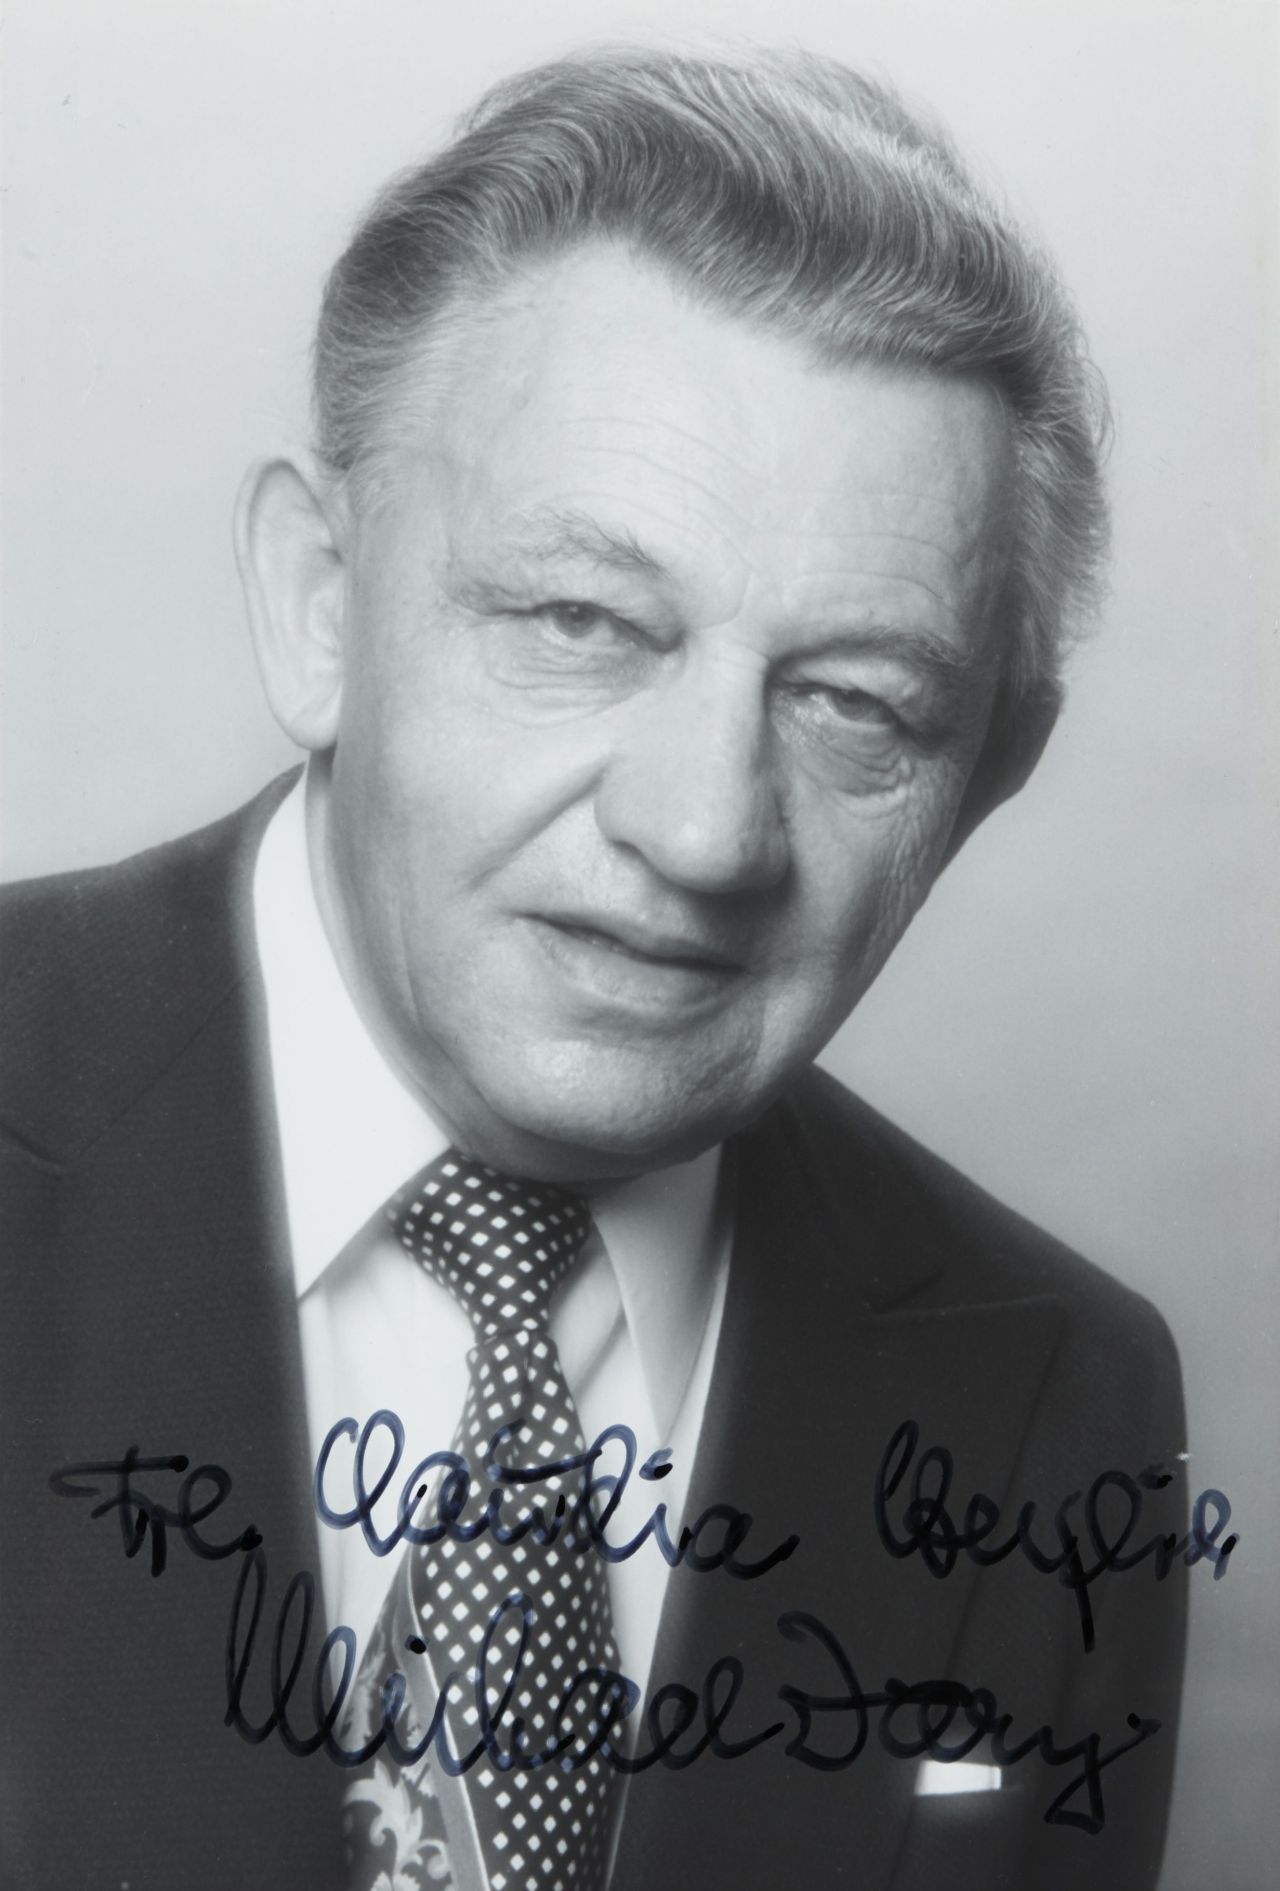 Porträtaufnahme des Schlagersängers Michael Jary mit Autogramm.